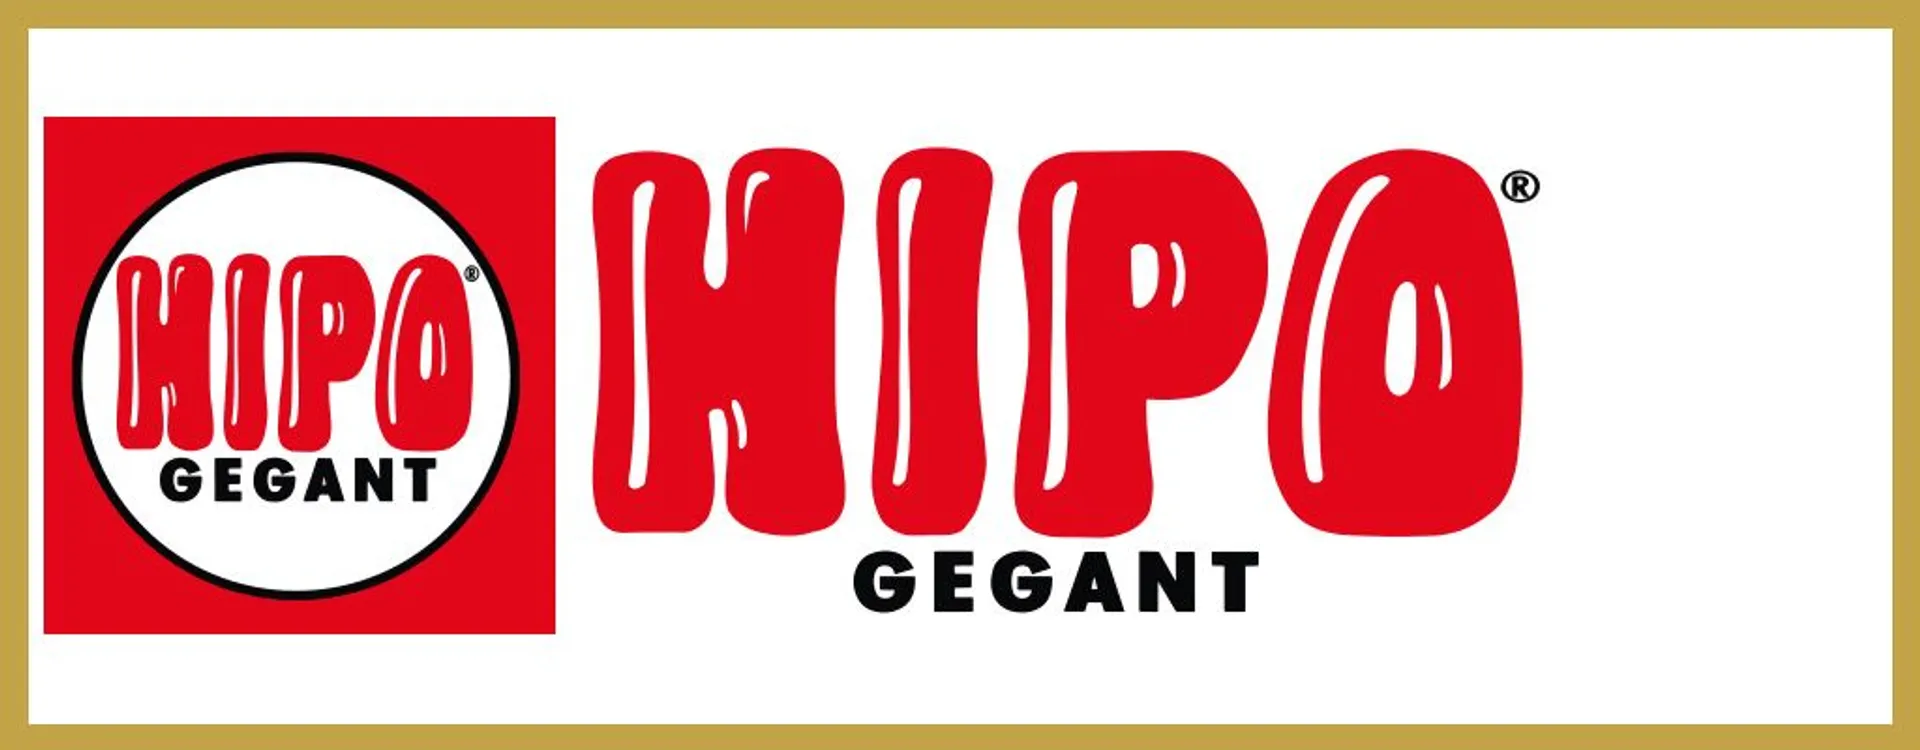 HIPO GEGANT logo